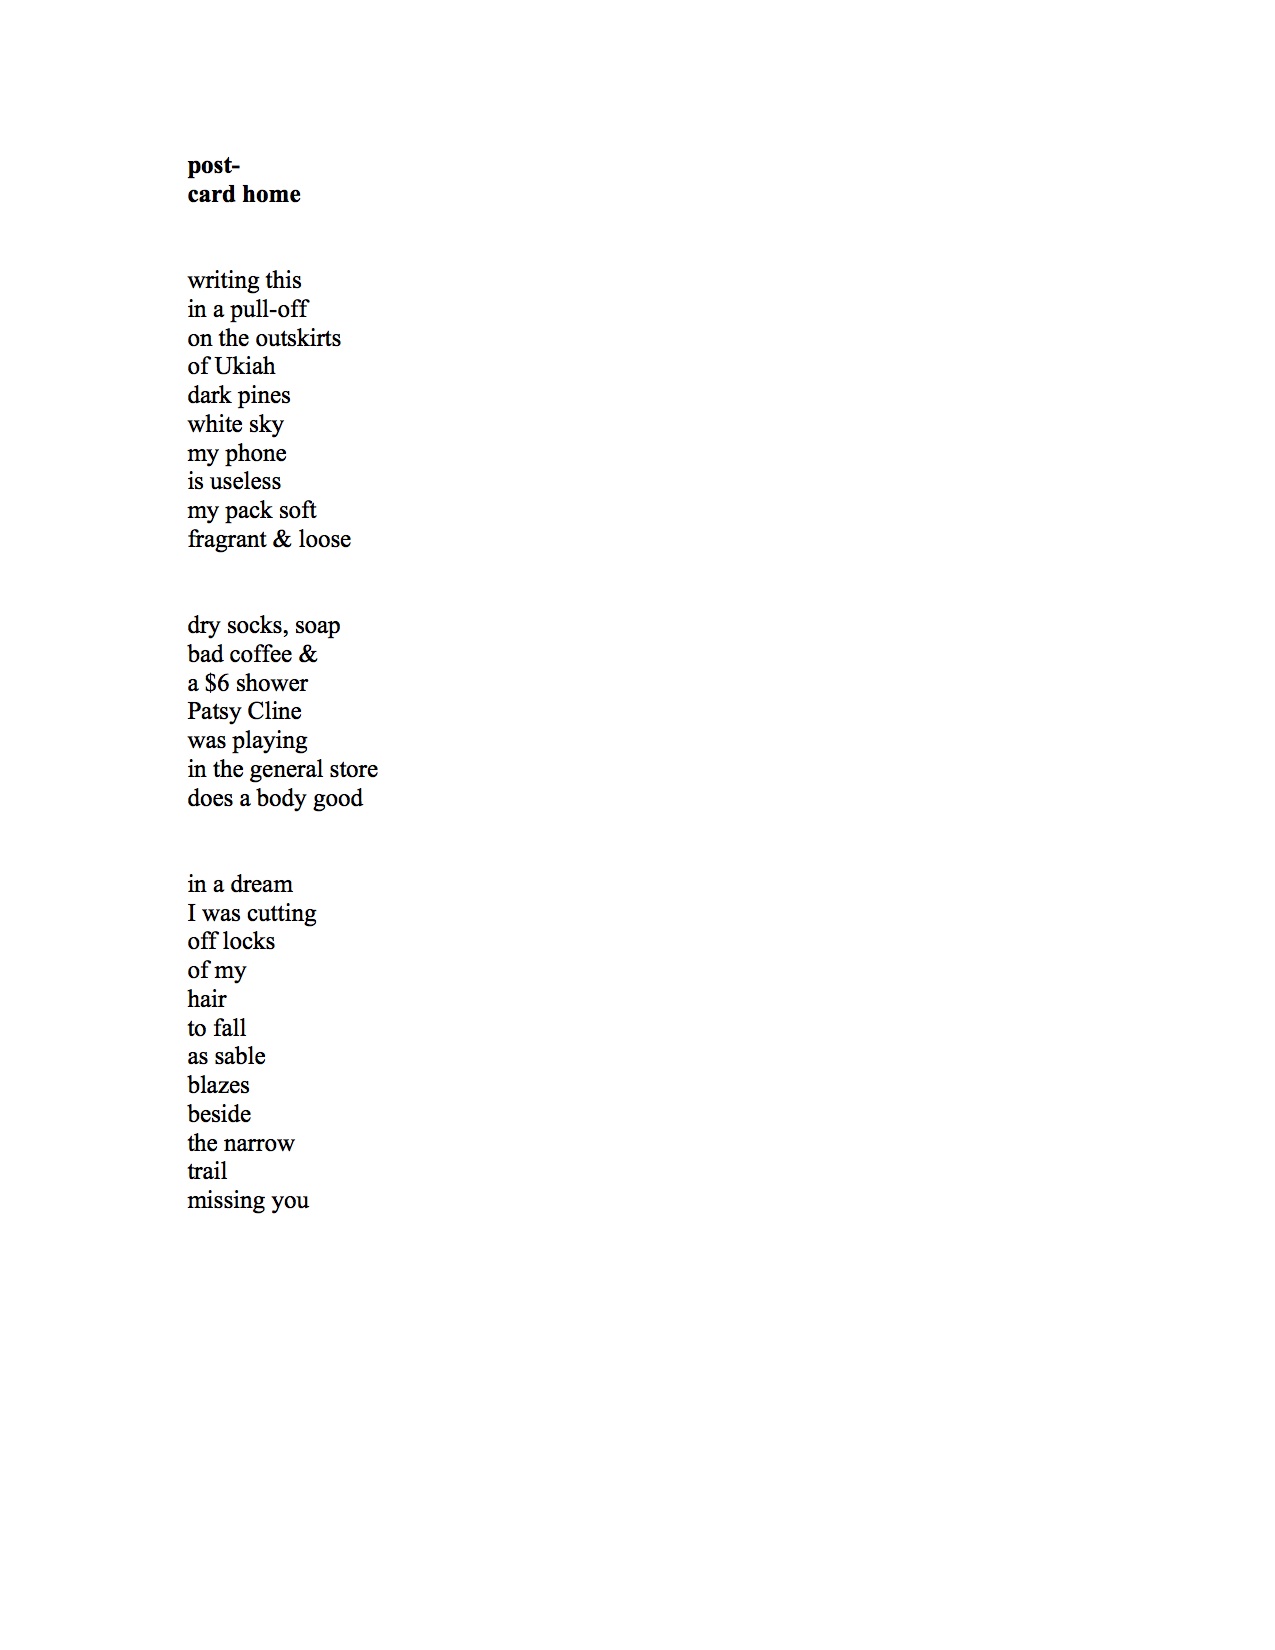 Formatted poem